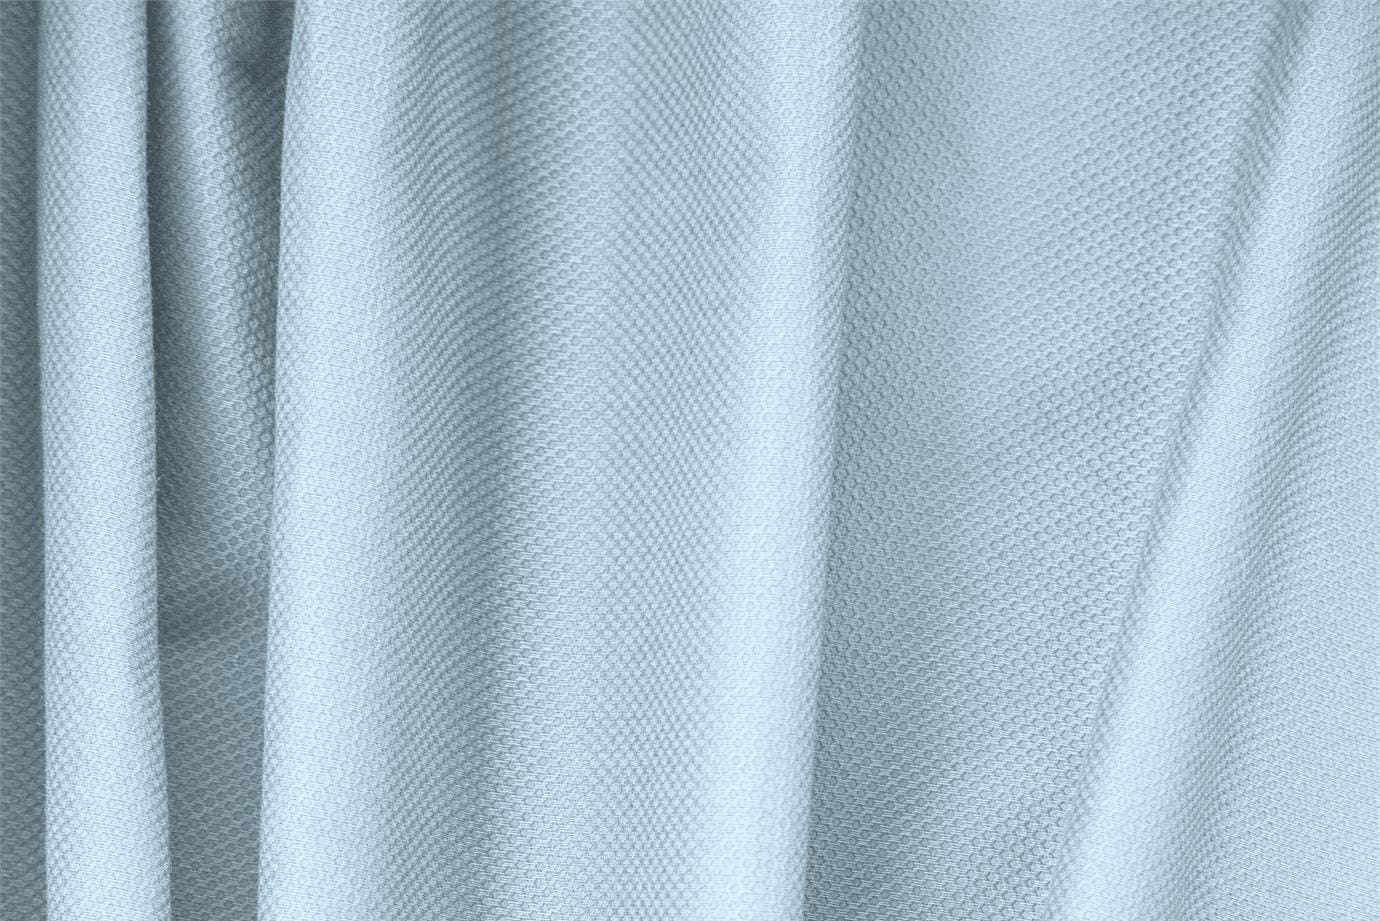 Capri Blue Cotton, Stretch Pique Stretch fabric for dressmaking